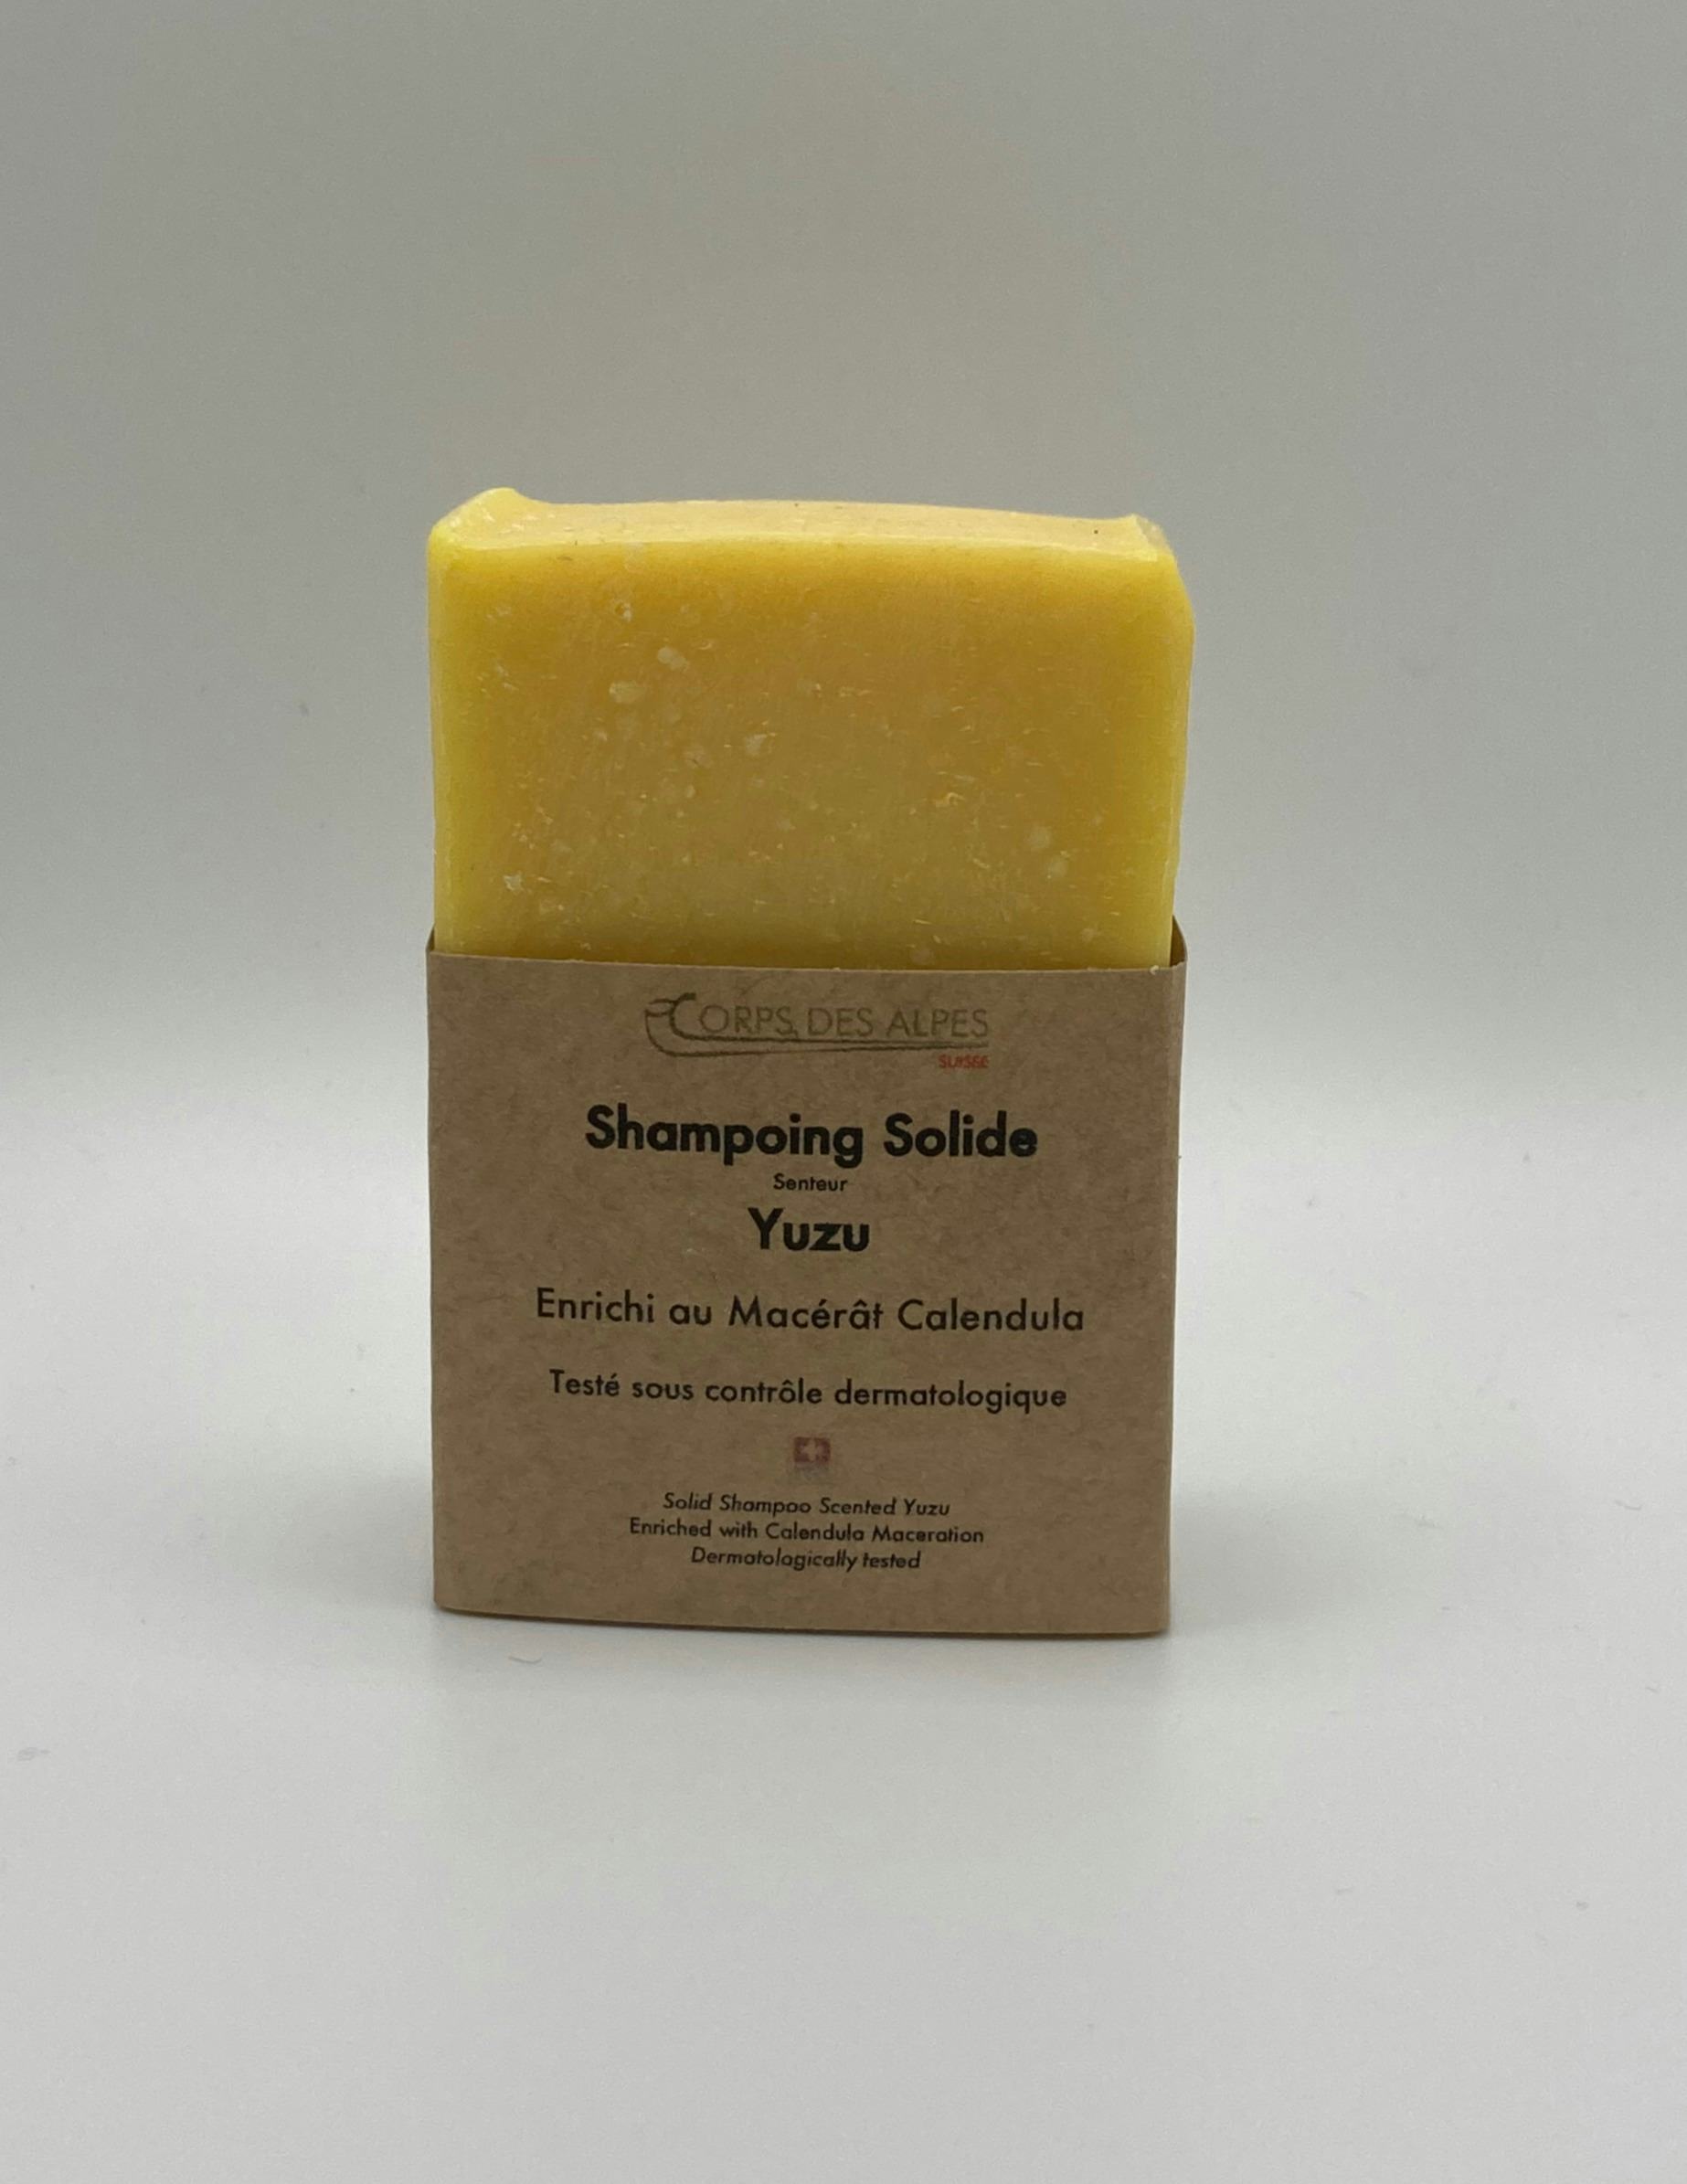 Shampoo solido al profumo di Yuzu, prodotto artigianale per la vendita diretta in Svizzera